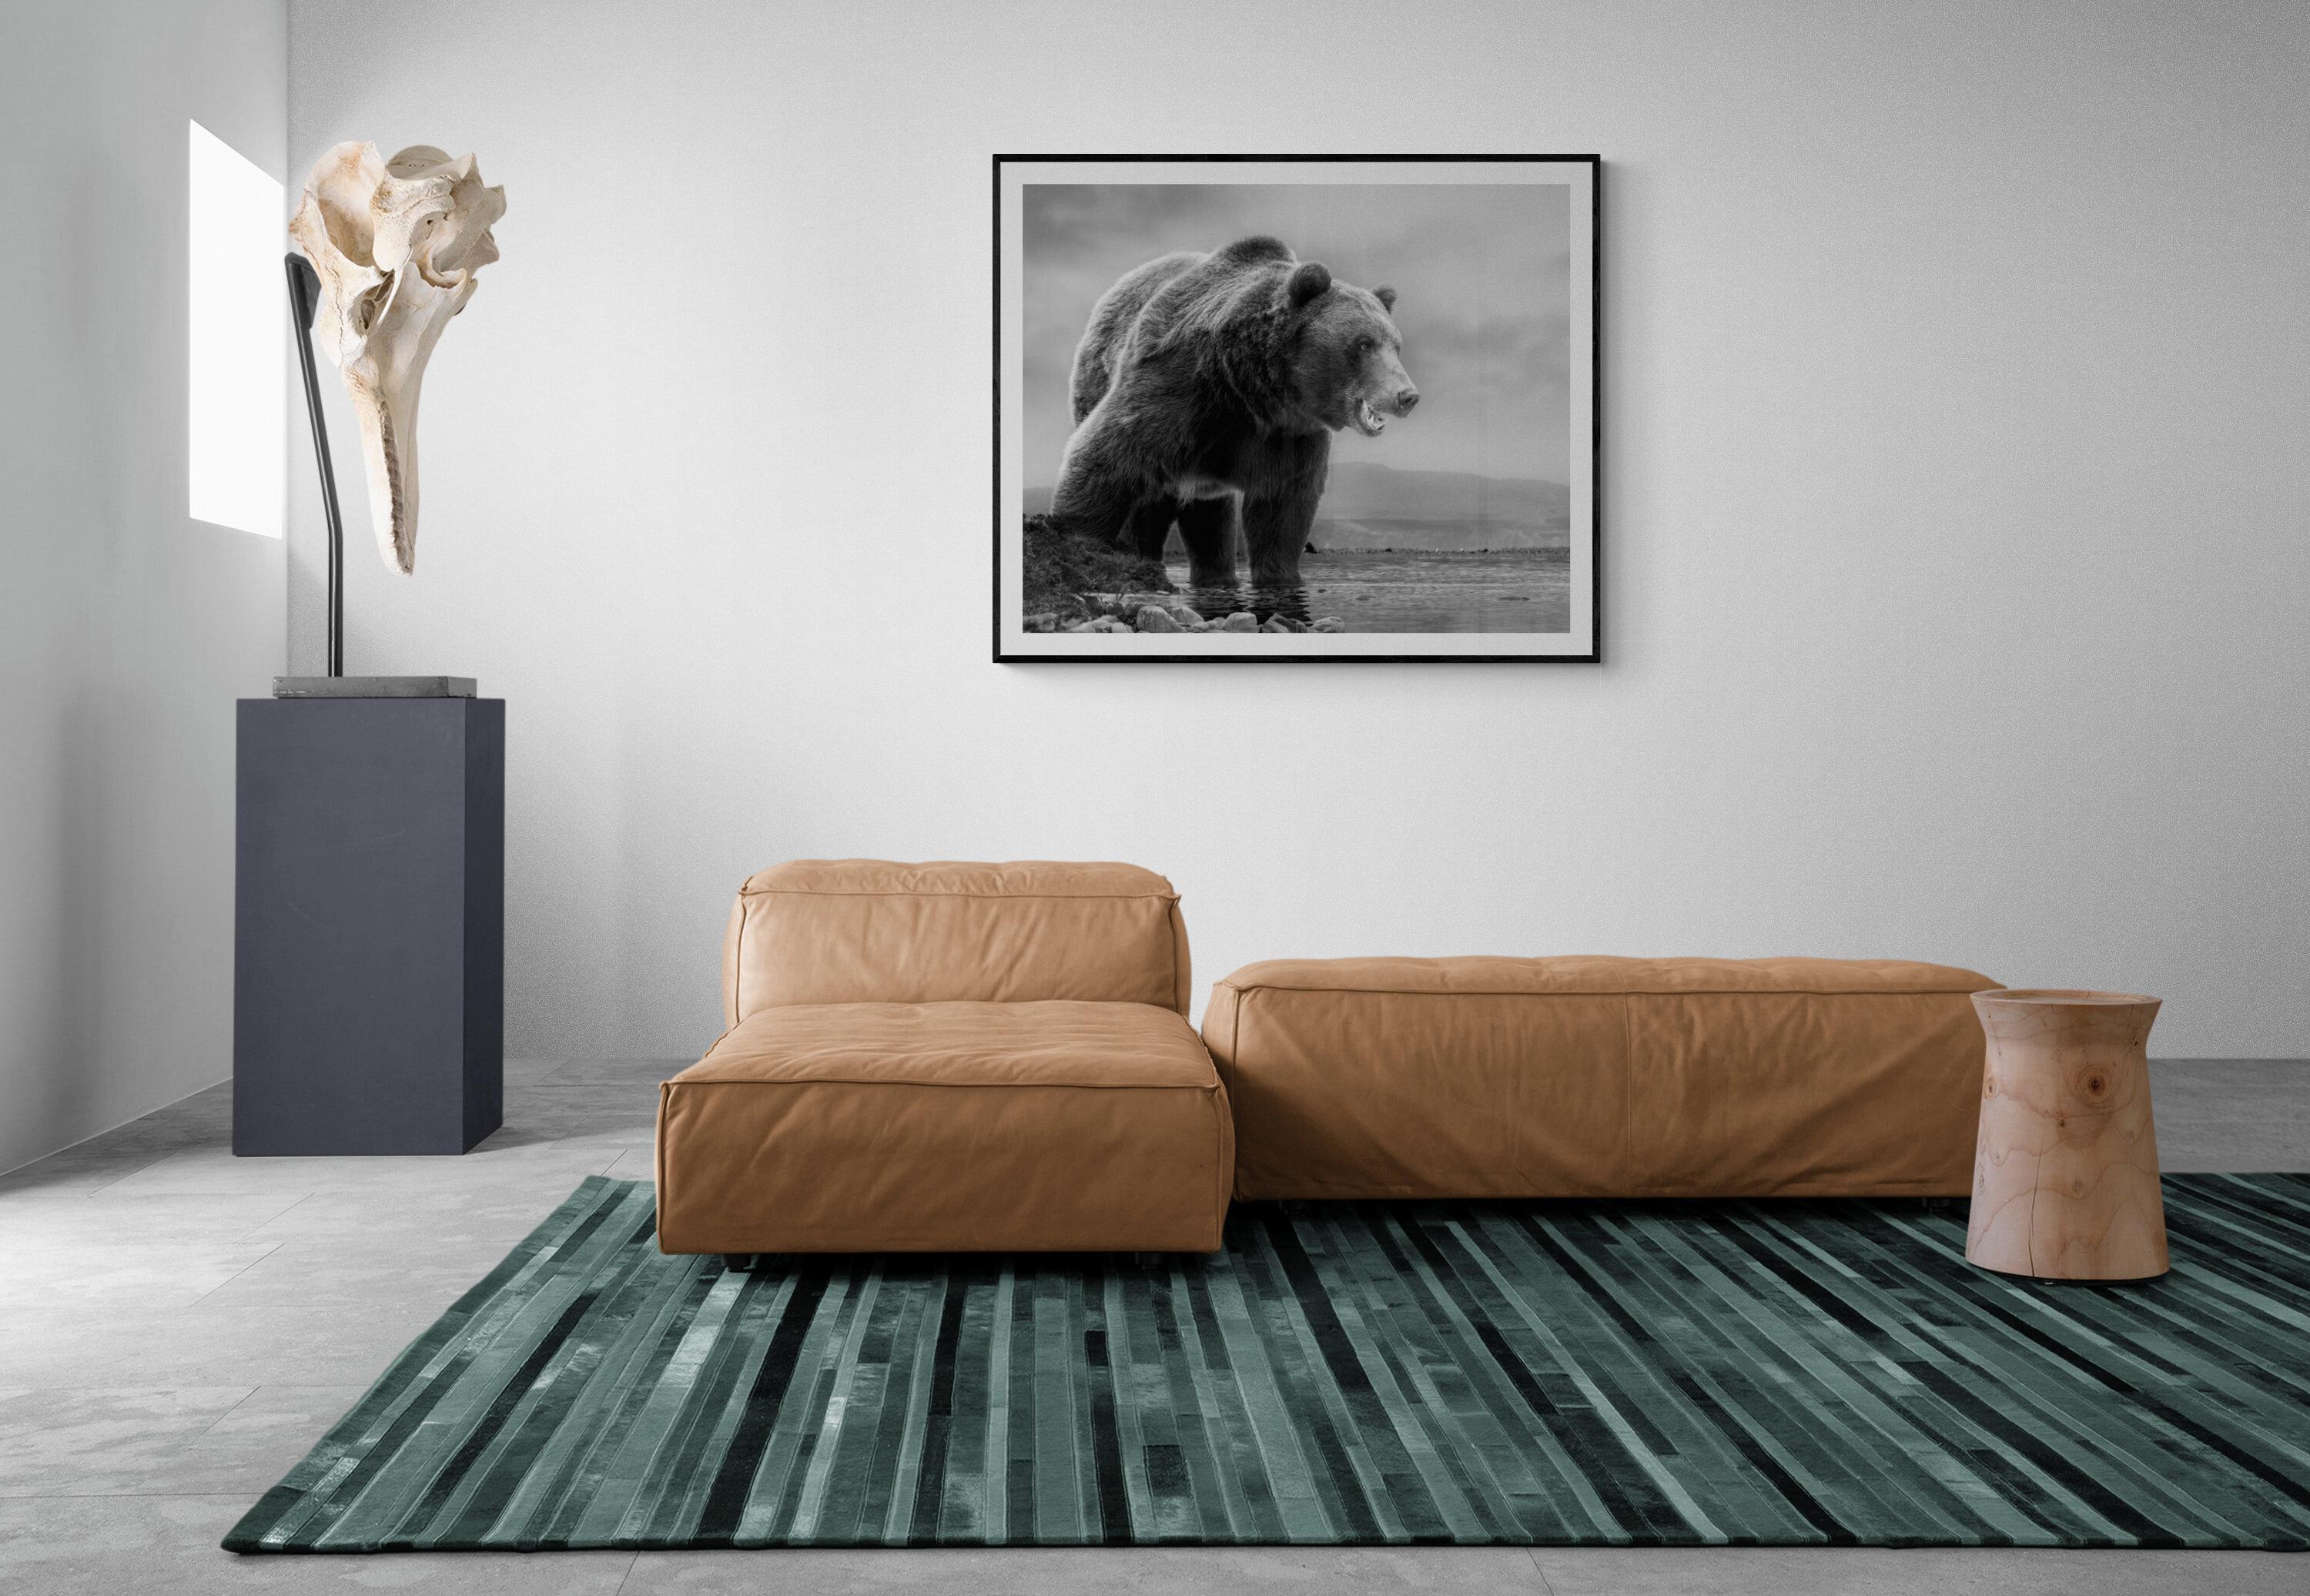 Il s'agit d'une photographie contemporaine d'un ours brun.  
Ceci a été tourné sur l'île de Kodiak en 2019. 
45x60 Edition de 10.
Signé et numéroté par Shane Russeck 
Papier pigmentaire d'archivage
Encadrement disponible. Renseignez-vous sur les